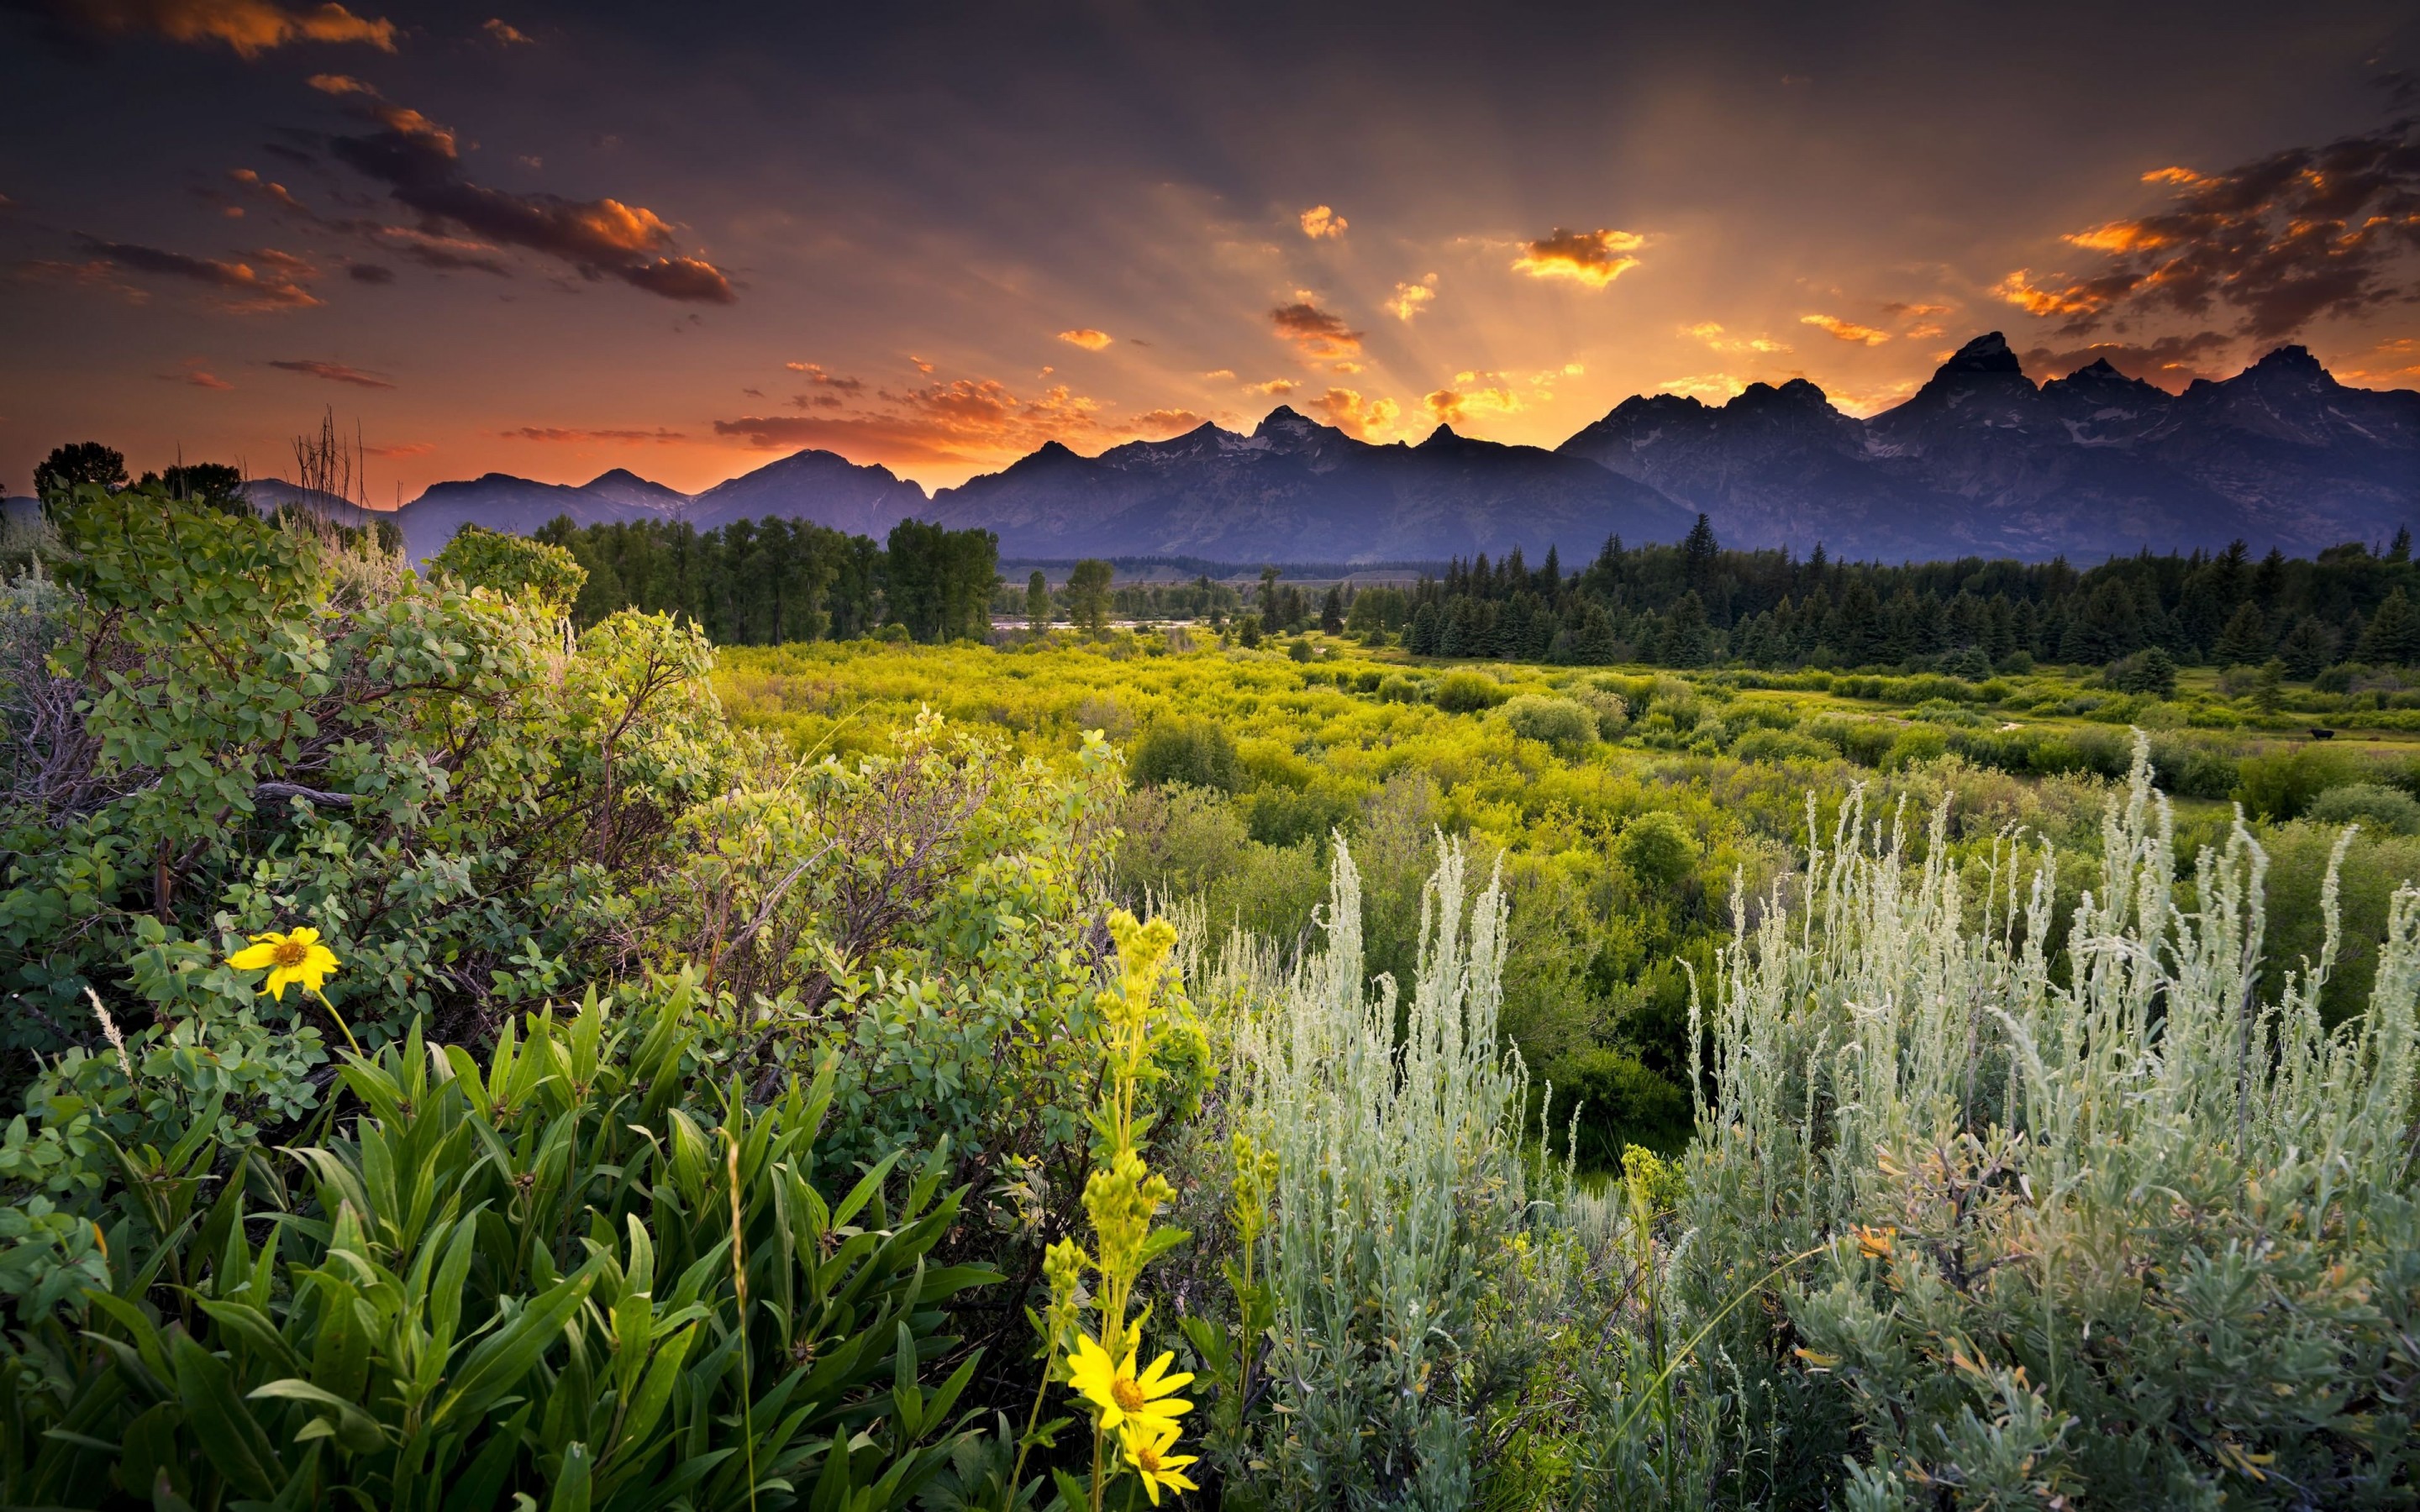 Sunset in Grand Teton National Park Wallpaper for Desktop 2880x1800